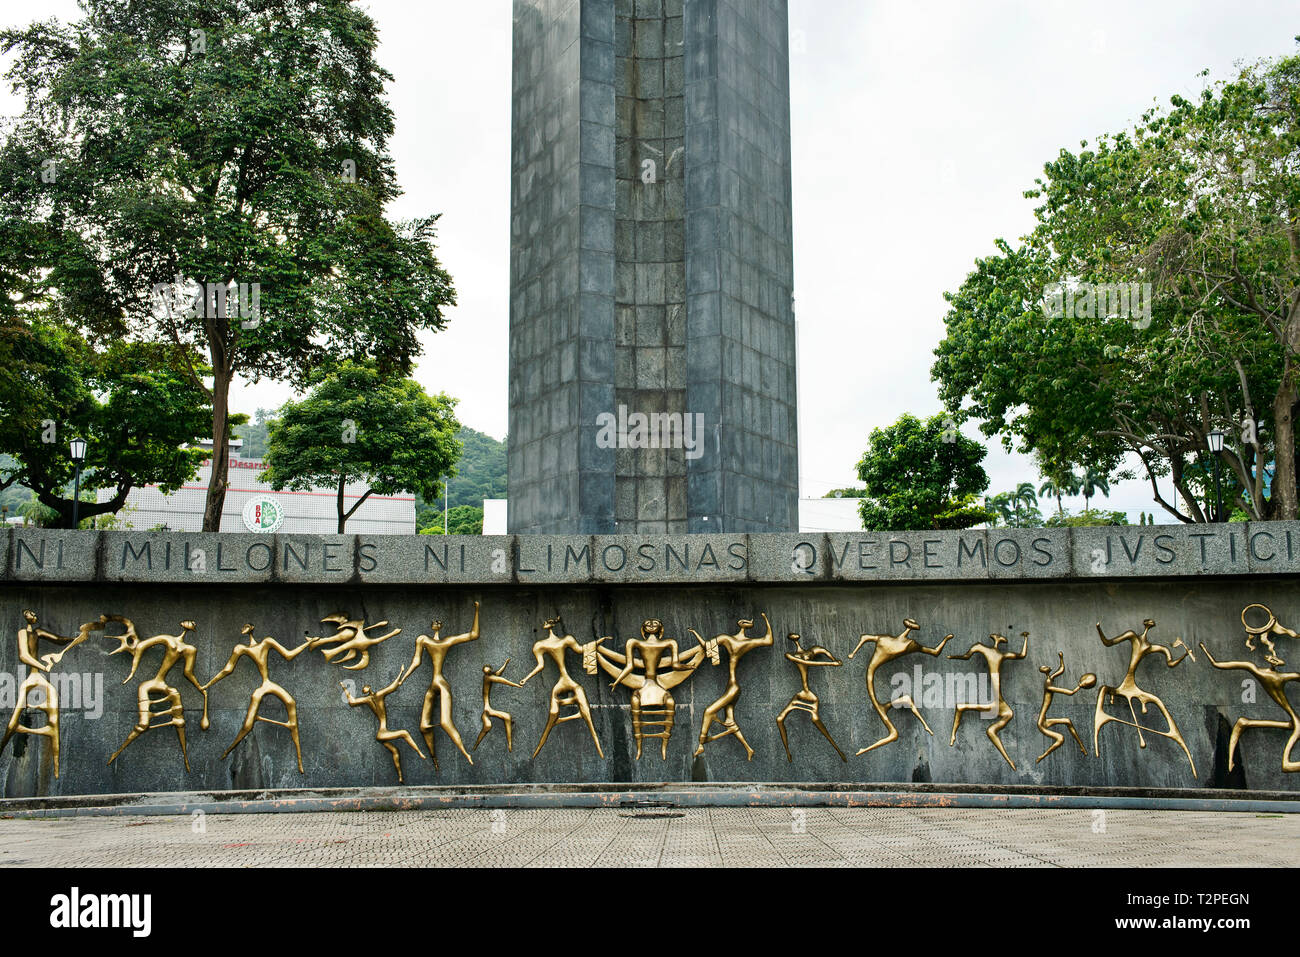 Plaza José remon Cantera monument national historique avec l'inscription 'ni des millions ni l'aumône, nous voulons la justice". La ville de Panama, Panama. Oct 2018 Banque D'Images